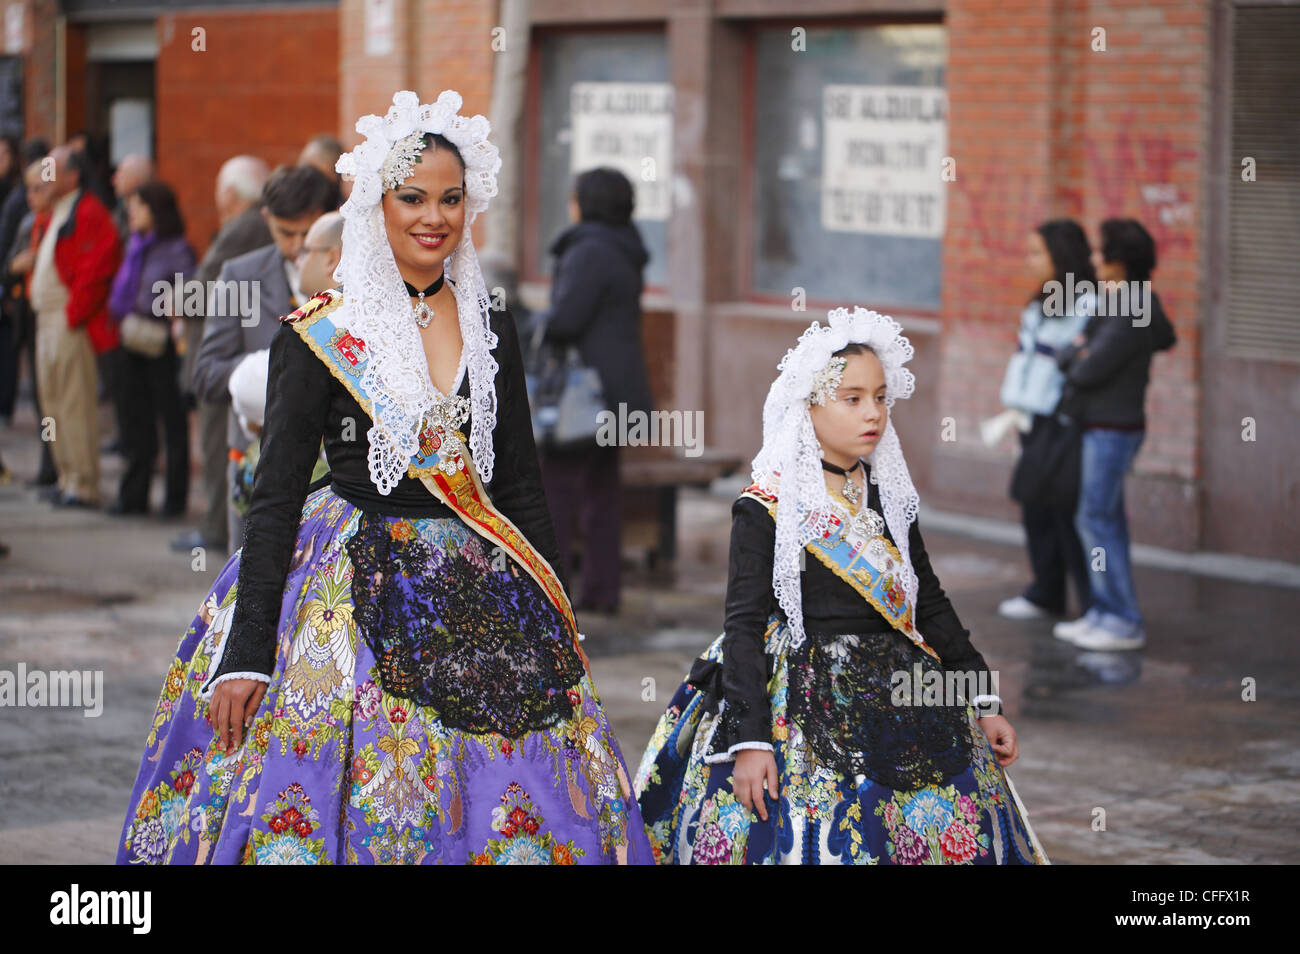 Lo spagnolo le donne indossano vestiti tradizionali durante la processione di strada, Alicante, Spagna Foto Stock